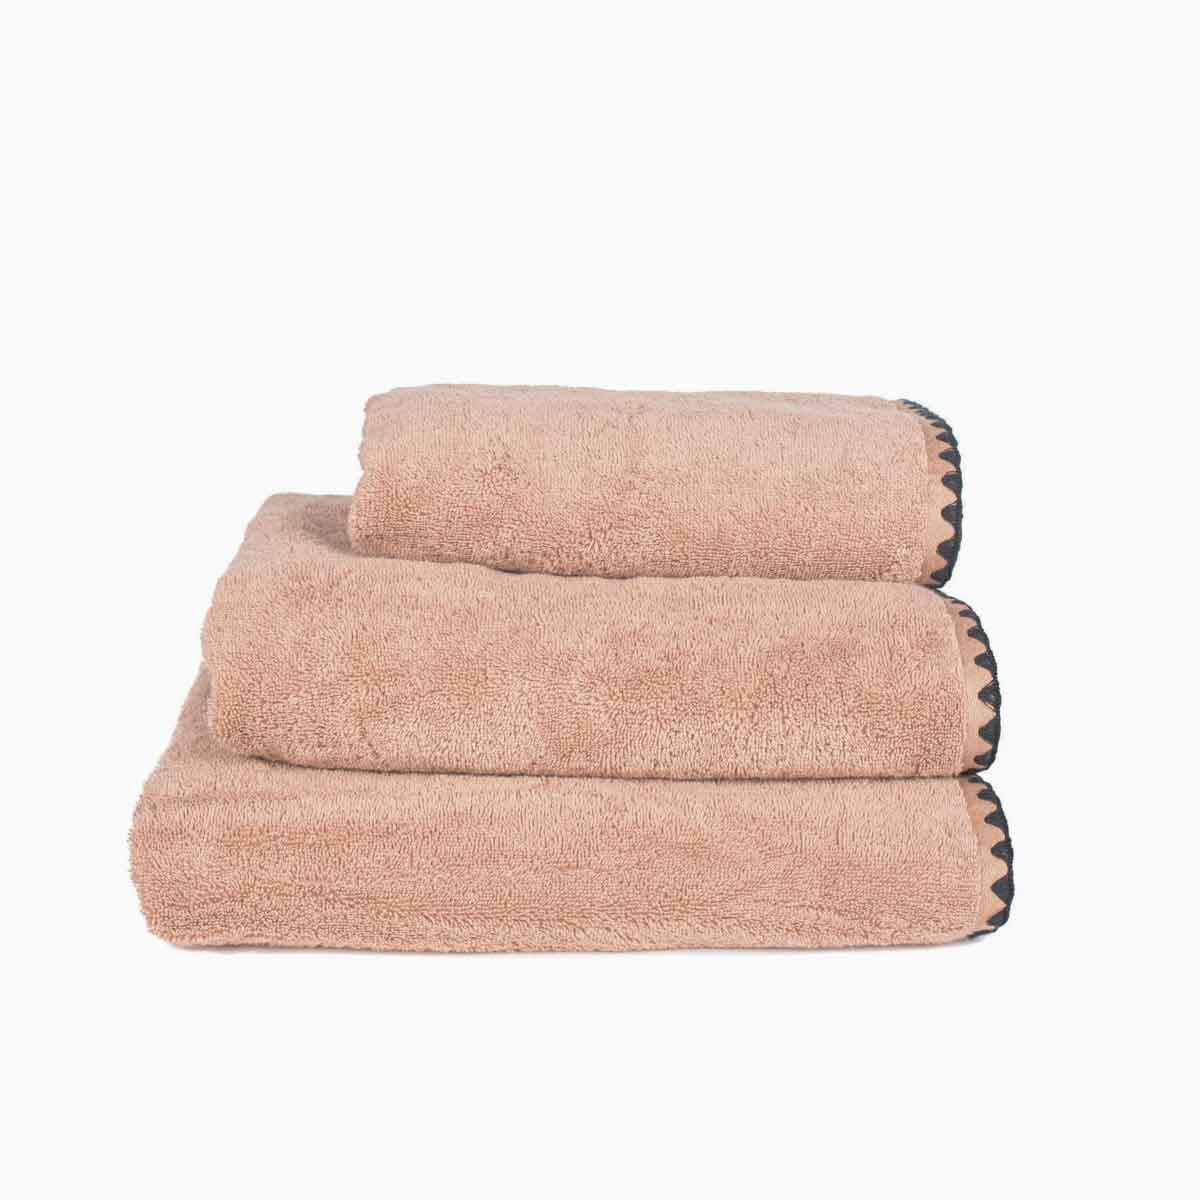 Guest towel Dusk pink